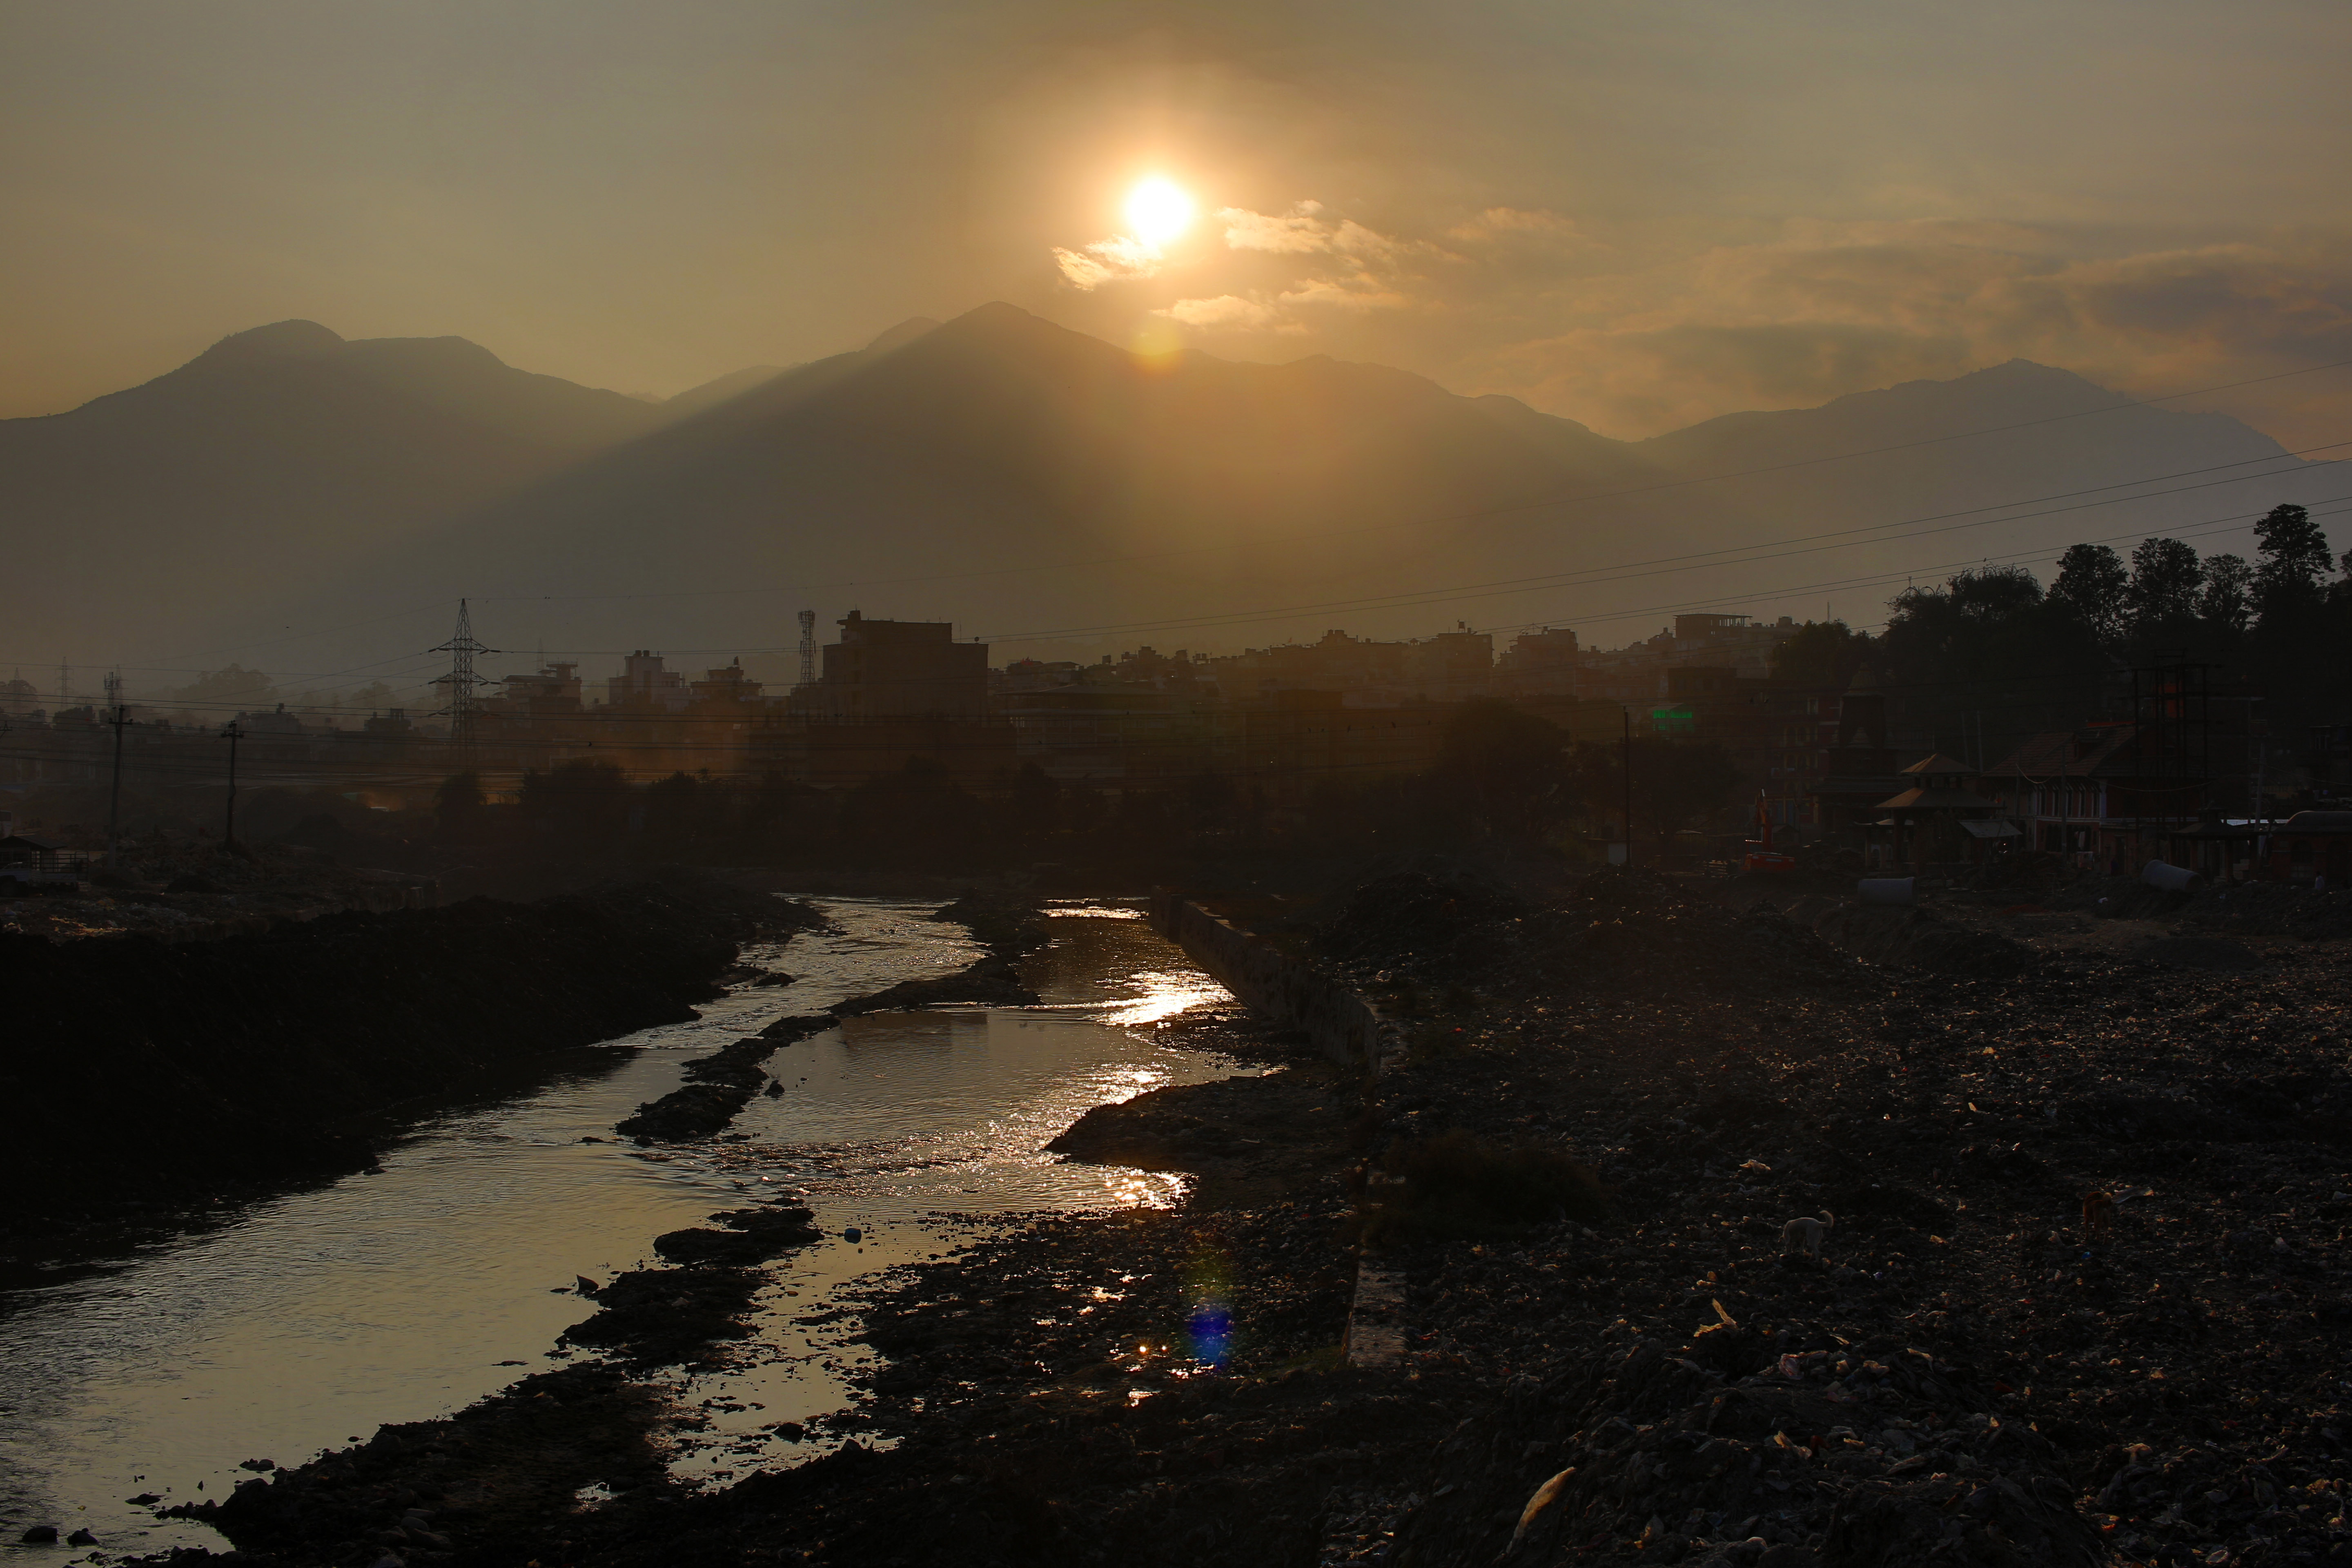 Sunset over the landscape in Kathmandu, Nepal image - Free stock photo